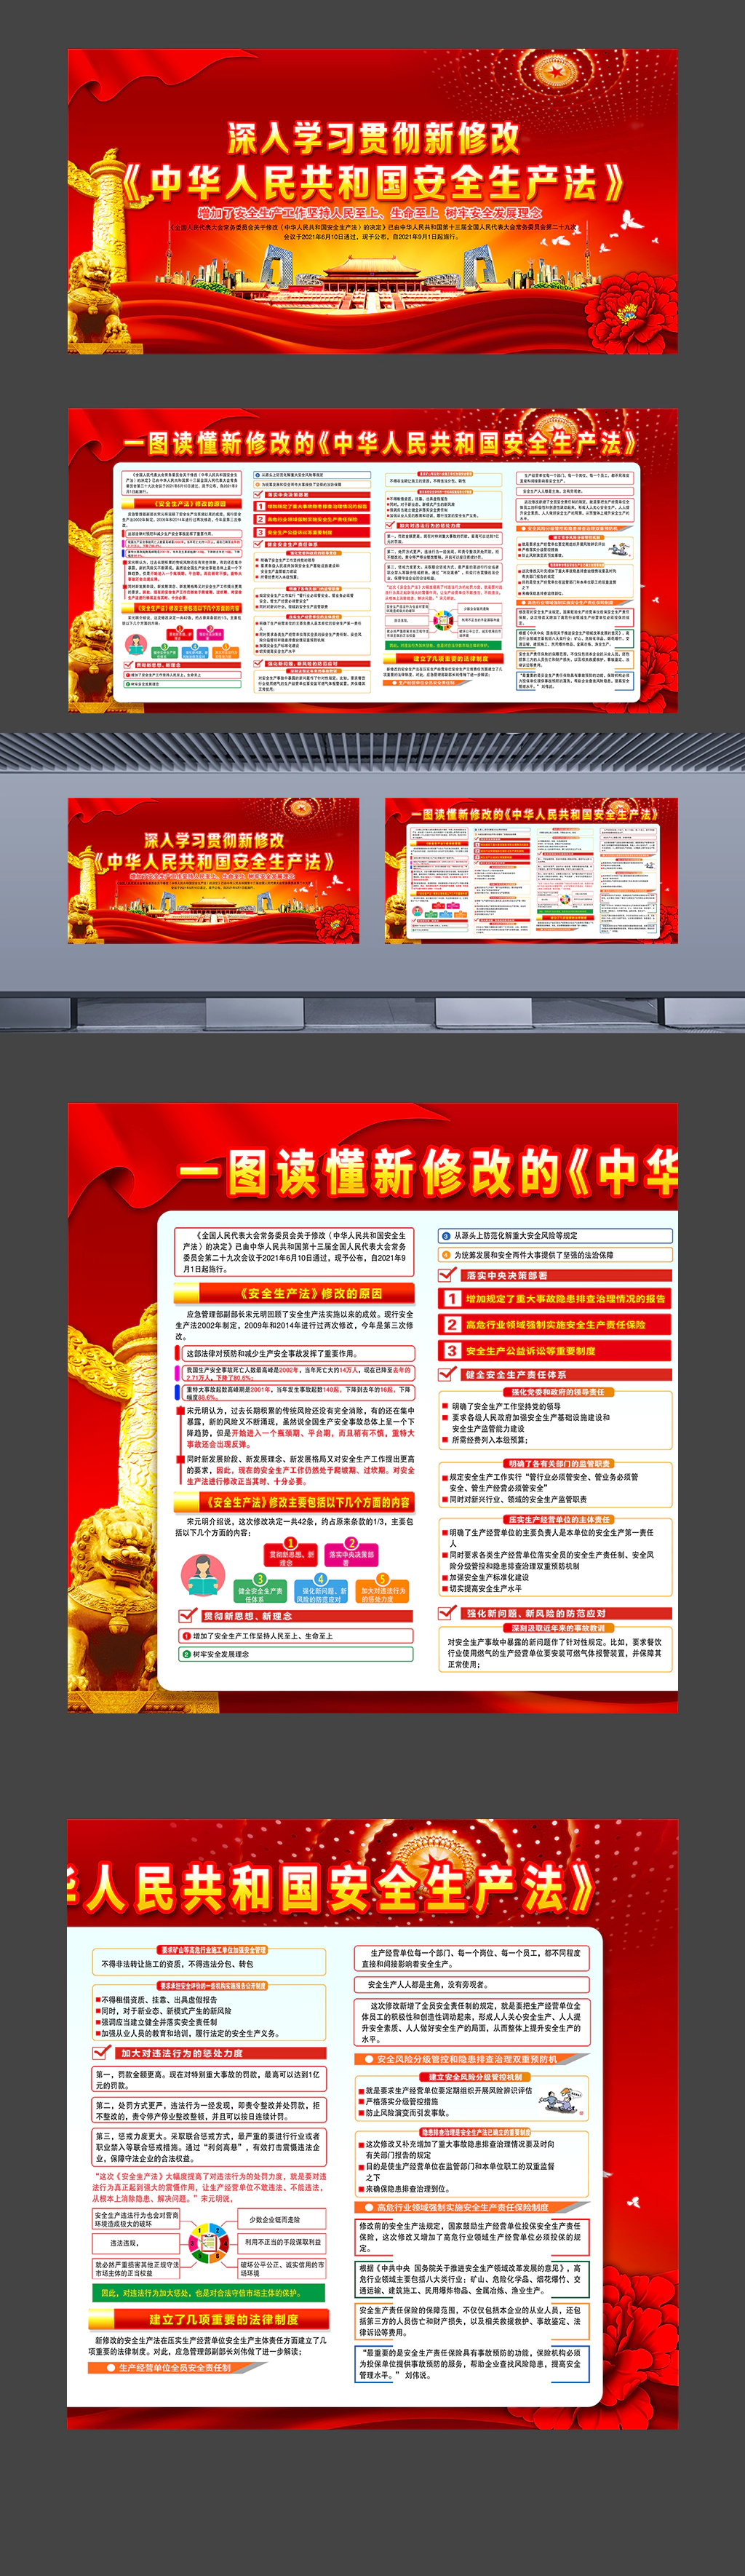 一图读懂新修改的《中华人民共和国安全生产法》普法教育宣传展板